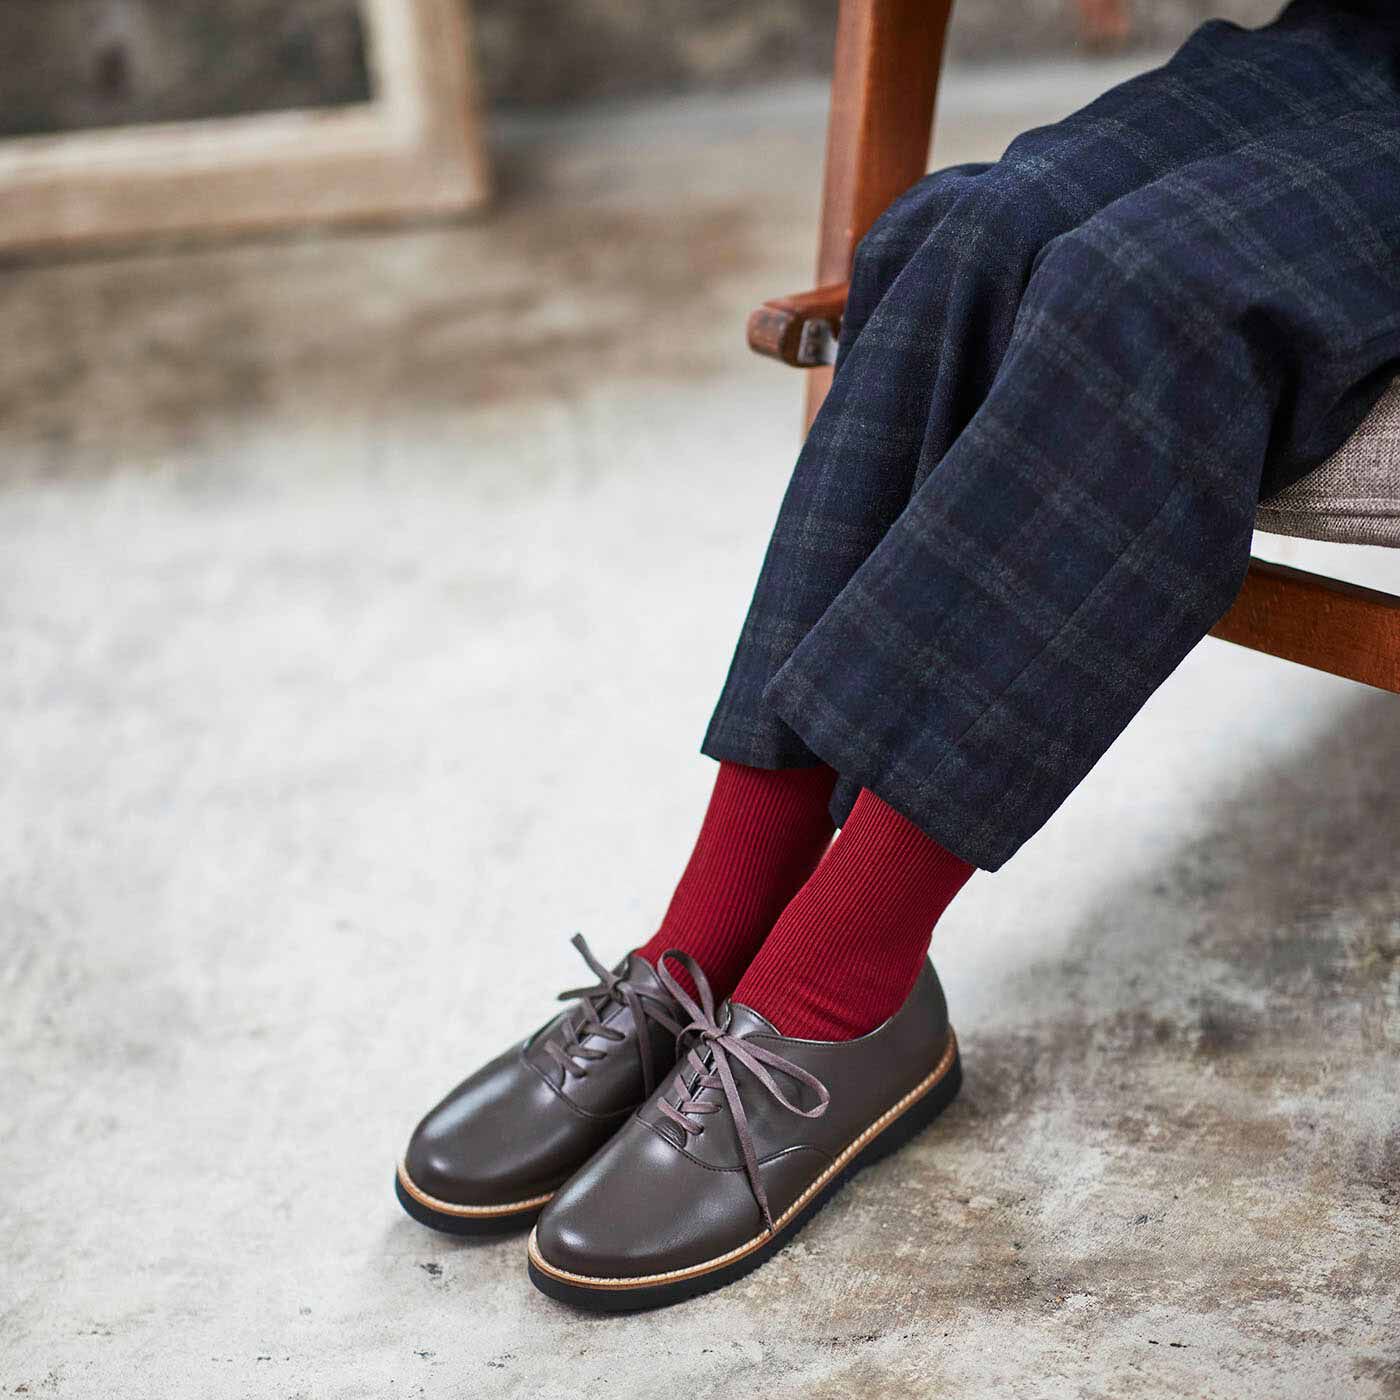 ＆Stories|長田の靴職人が作った 職人本革のポストマンシューズ〈ダークブラウン〉|ほどよいボリューム感で着こなしのバランスが取りやすく、何にでも合うプレーンなデザインが人気の理由。